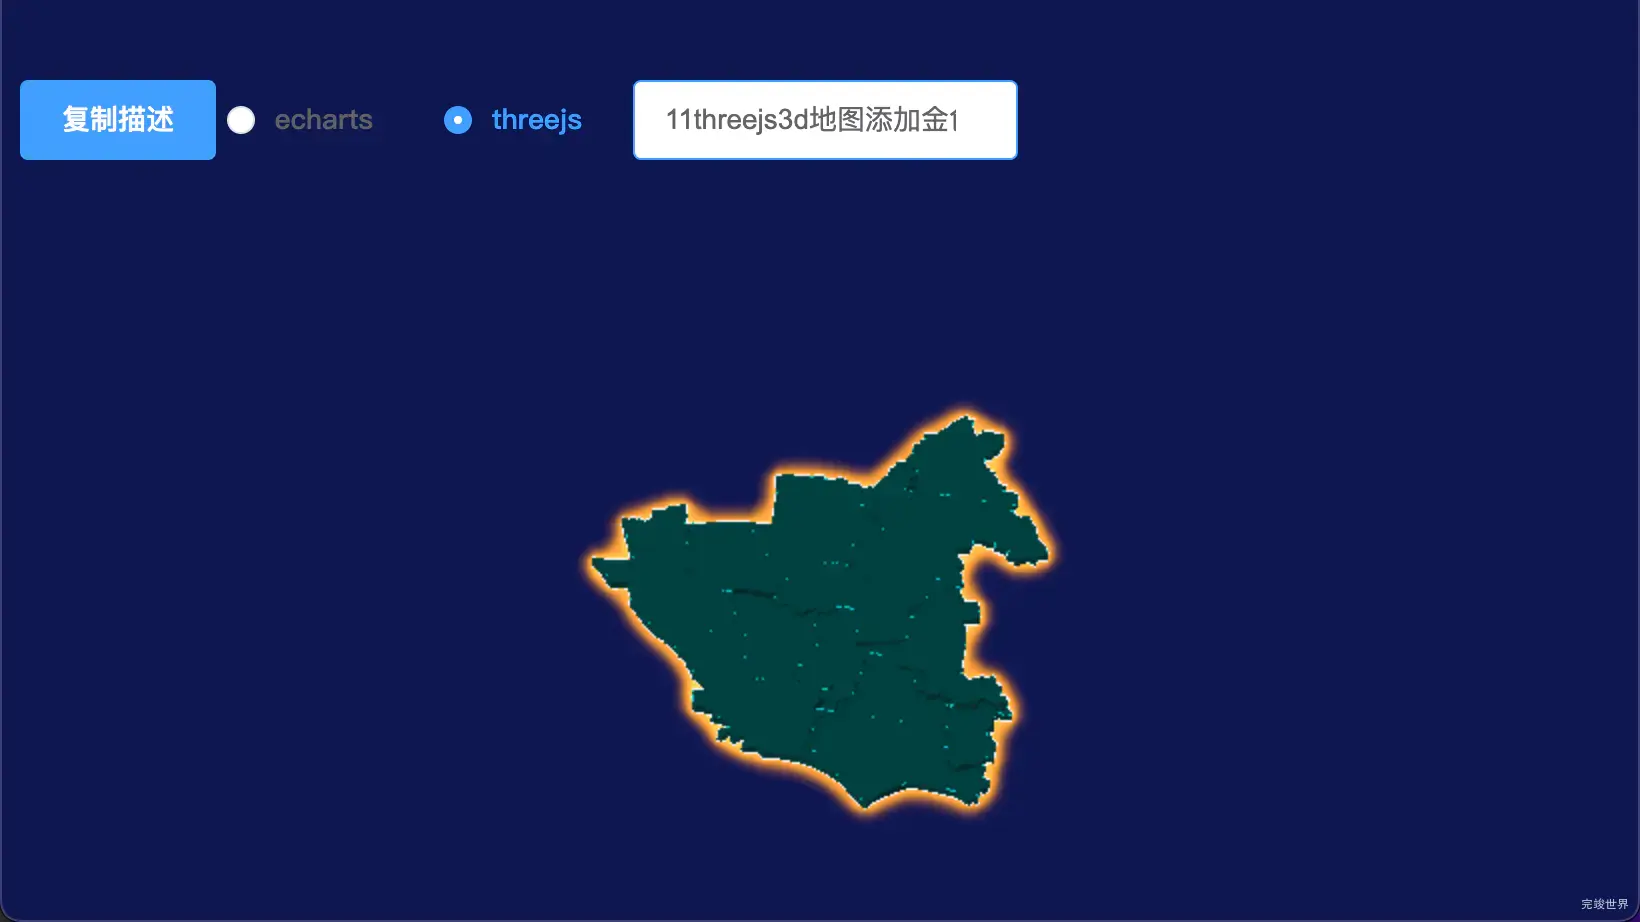 threejs扬州市江都区geoJson地图3d地图添加描边效果